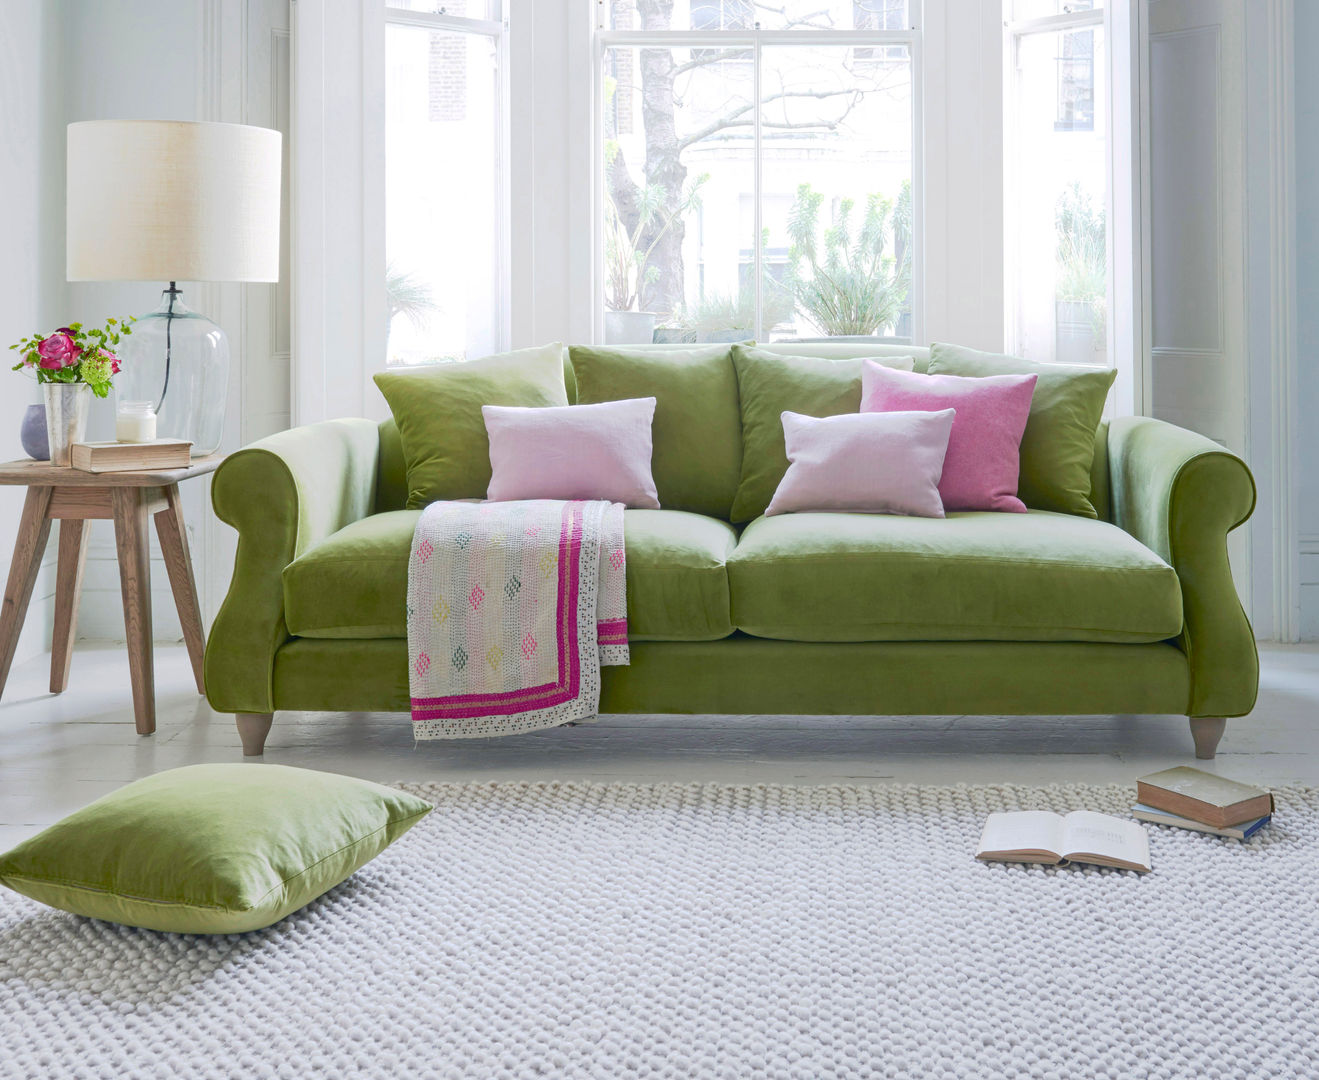 Sloucher sofa Loaf Livings de estilo clásico Algodón Rojo Salas y sillones